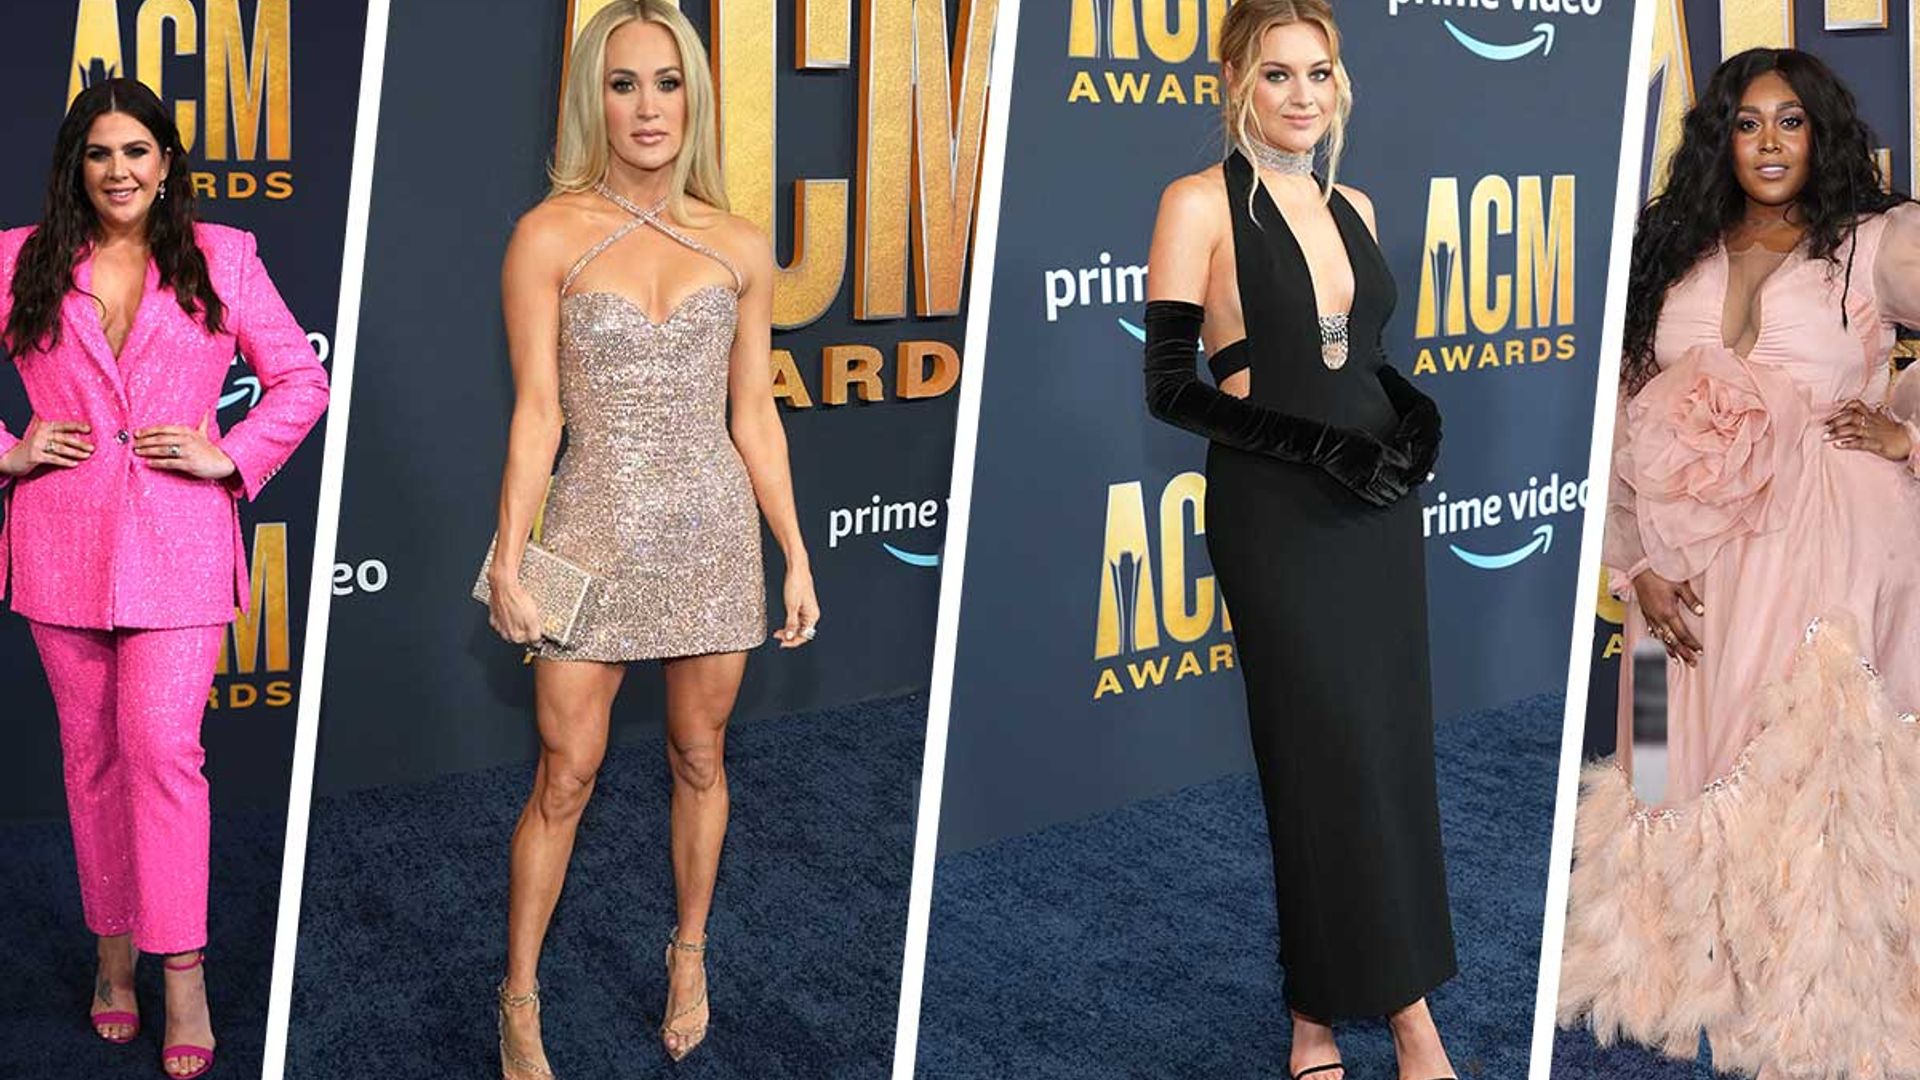 CMAs 2022: Carrie Underwood Wears Dreamy Blue Dress on Red Carpet